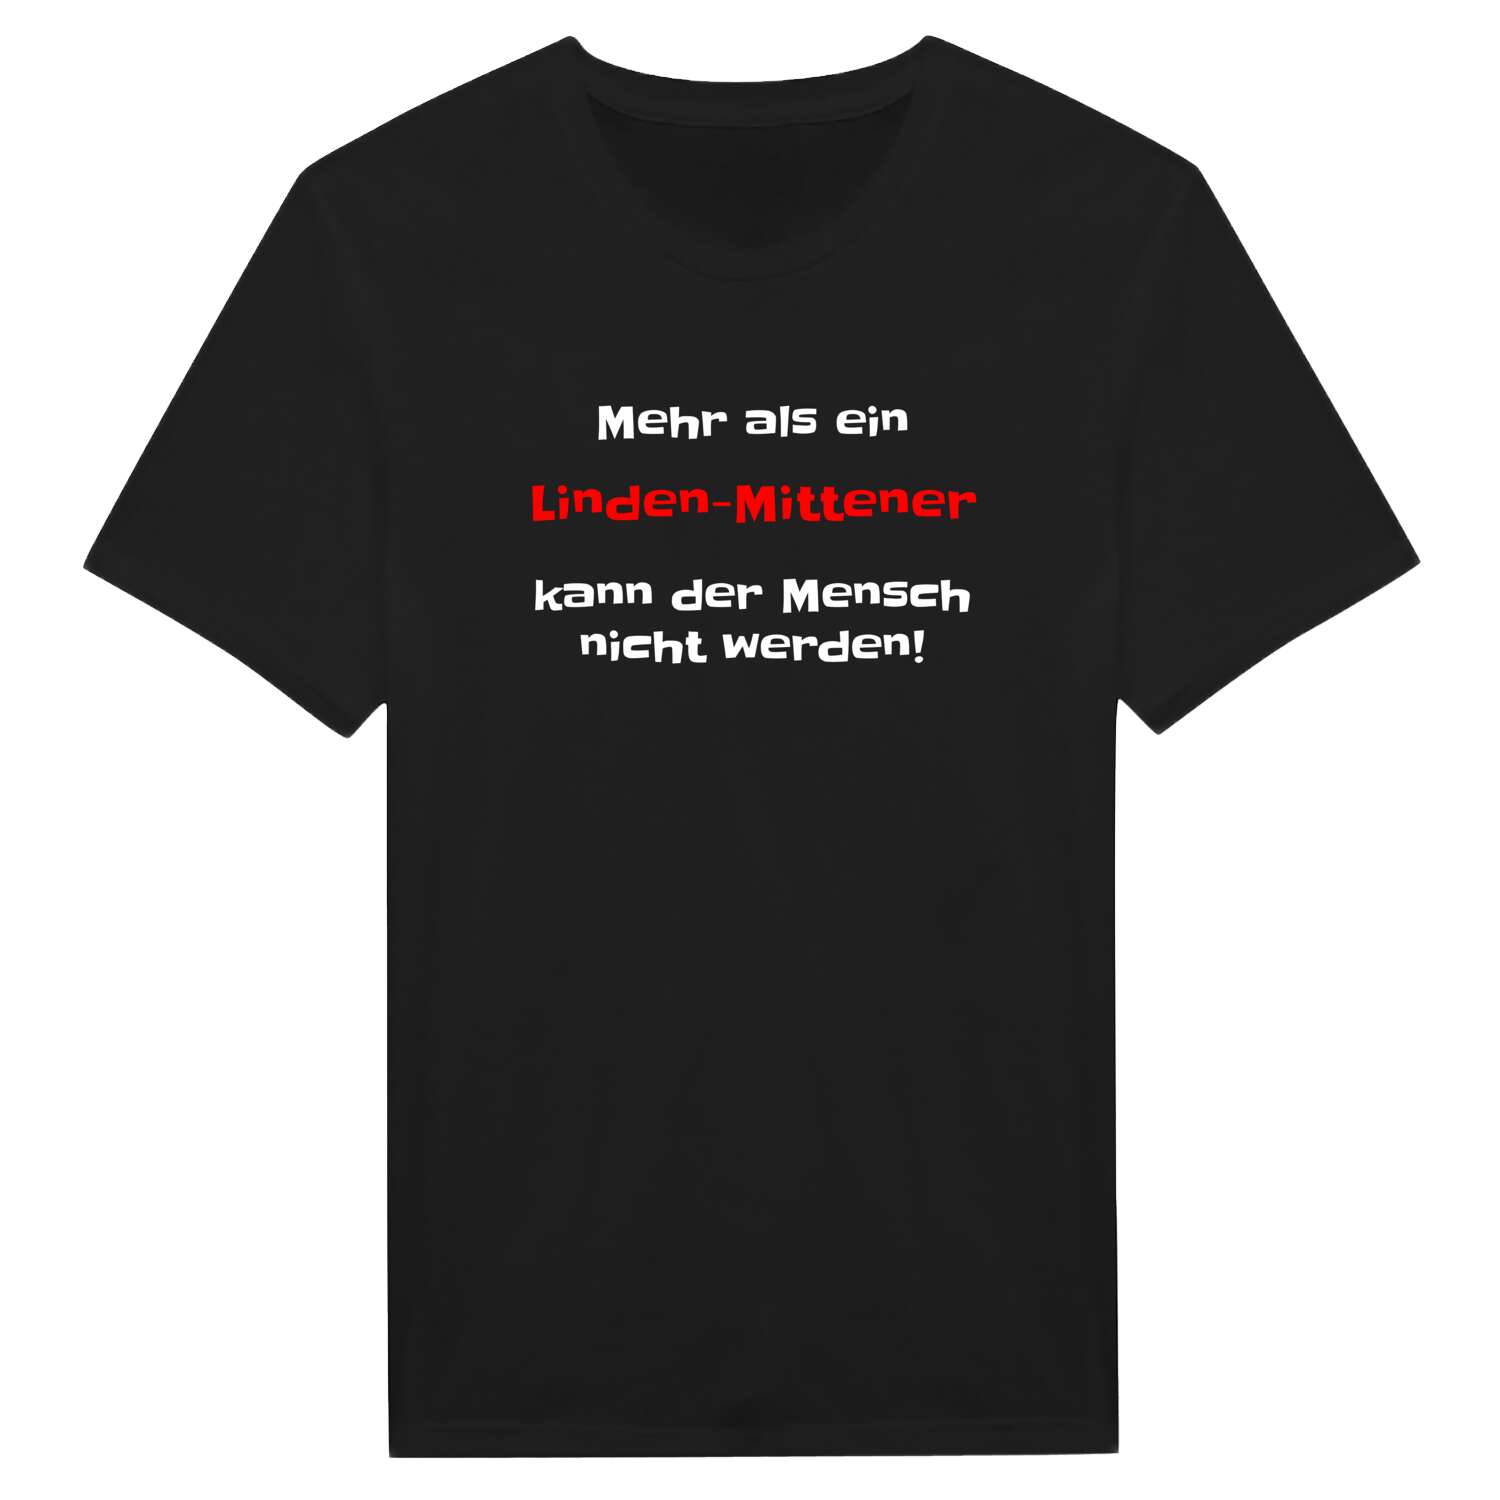 Linden-Mitte T-Shirt »Mehr als ein«